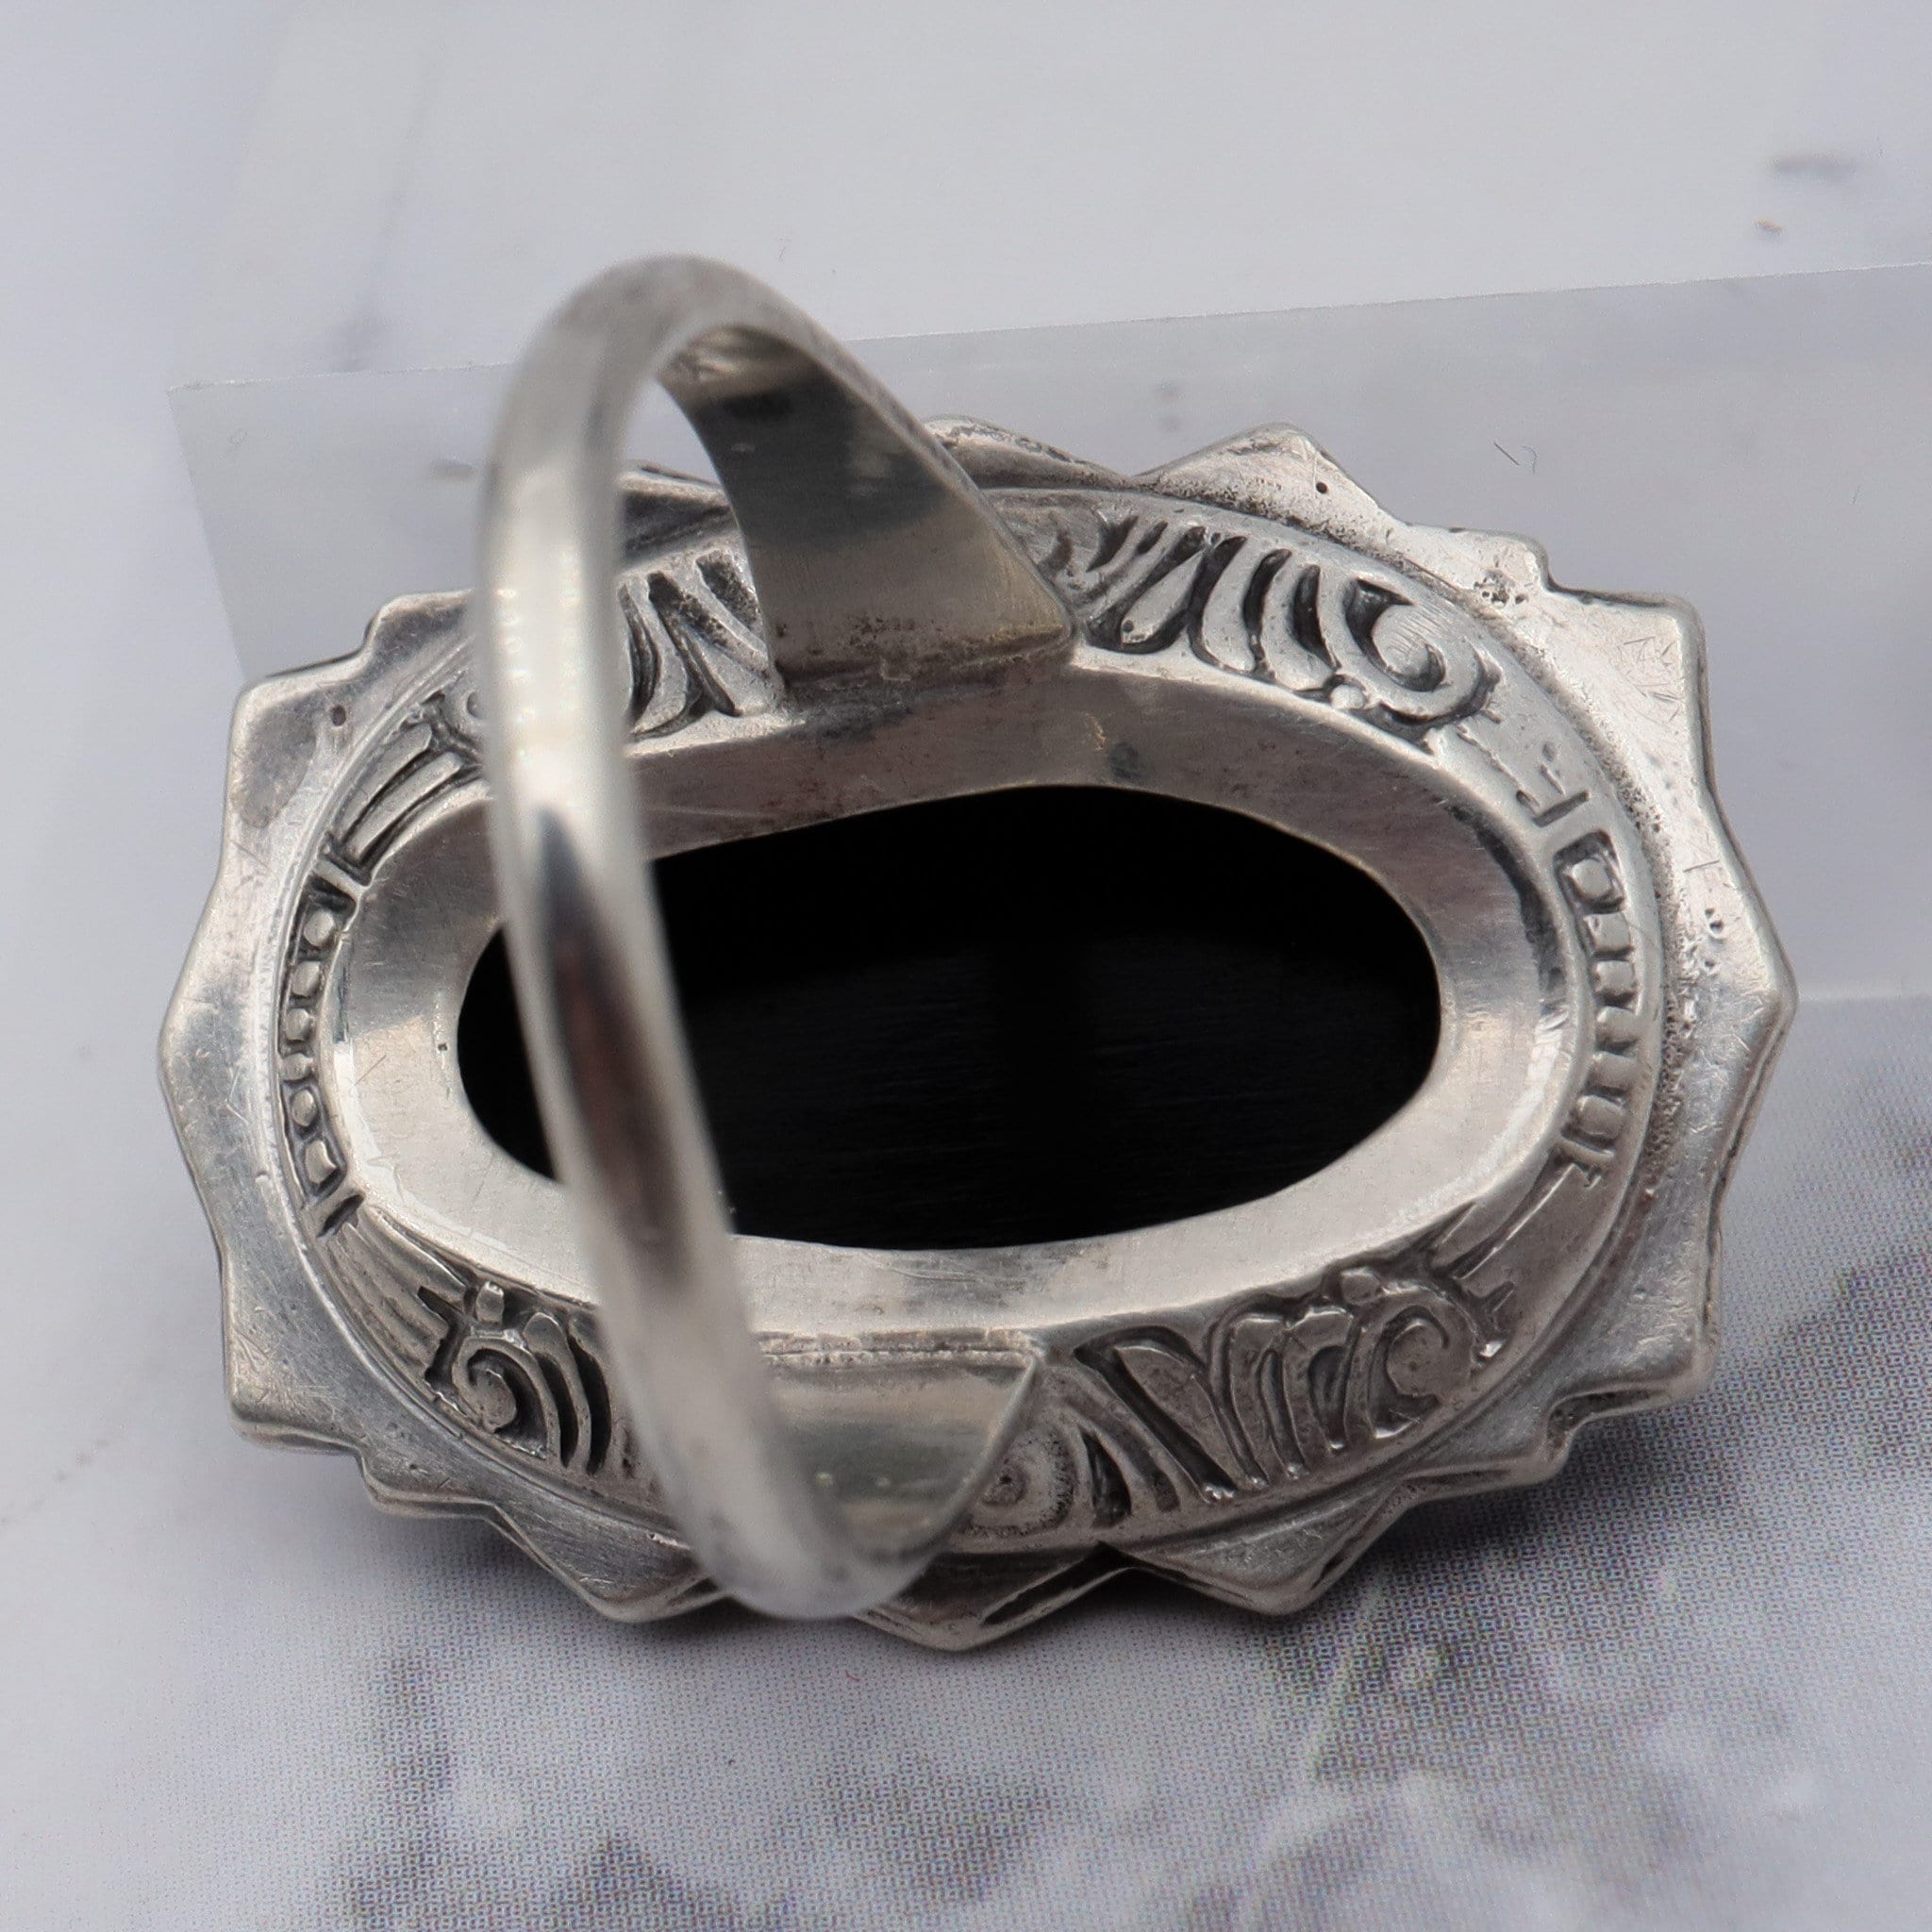 Antique Art Deco Uncas sterling, black glass stone & marcasite ring, sz 5.5